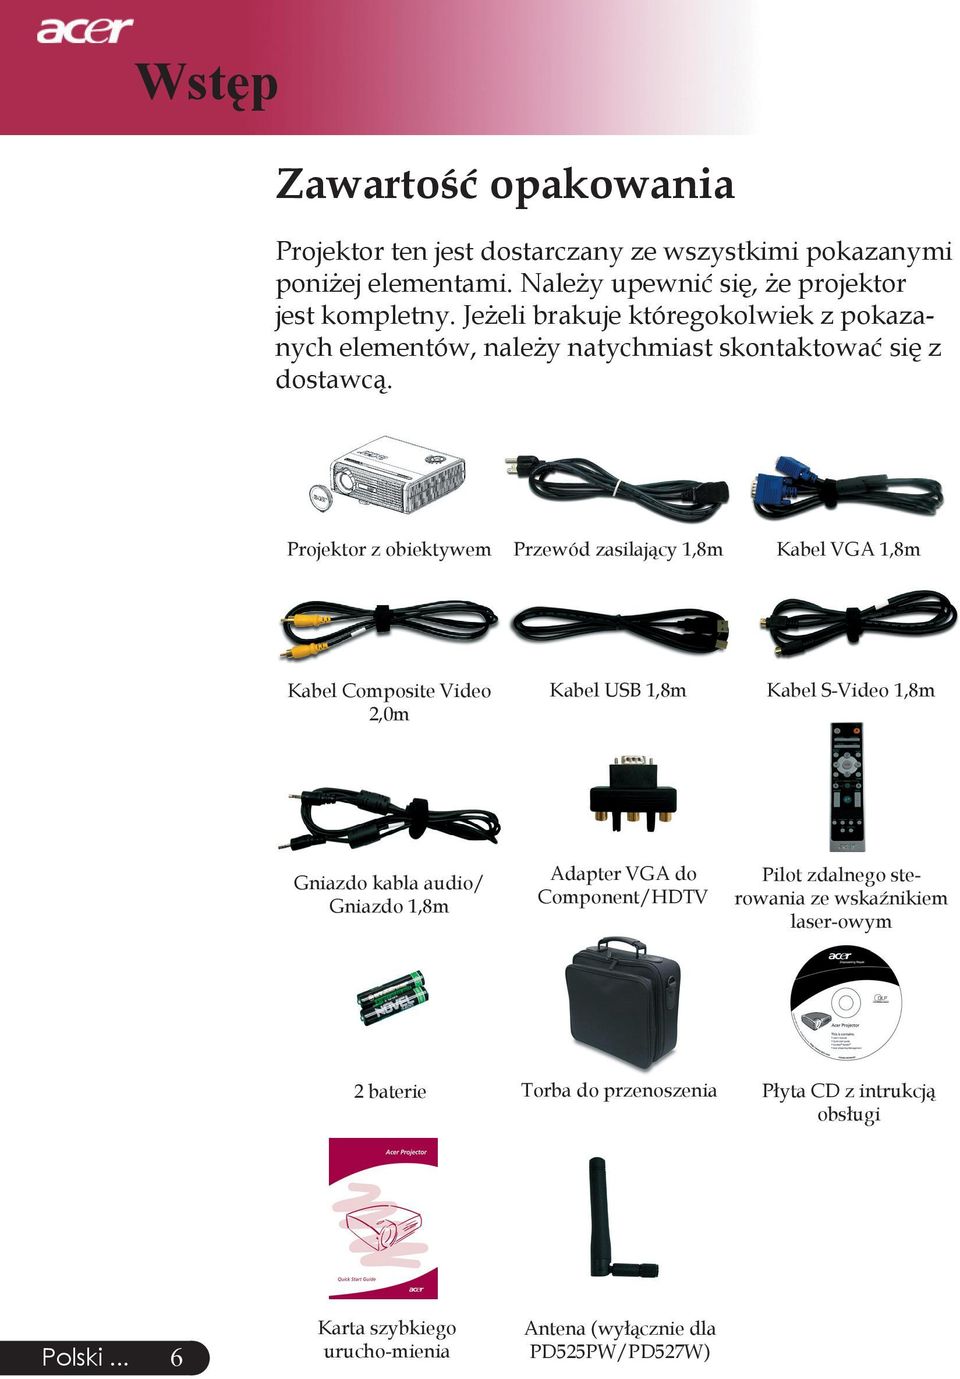 Projektor z obiektywem Przewód zasilający 1,8m Kabel VGA 1,8m Kabel Composite Video 2,0m Kabel USB 1,8m Kabel S-Video 1,8m Gniazdo kabla audio/ Gniazdo 1,8m